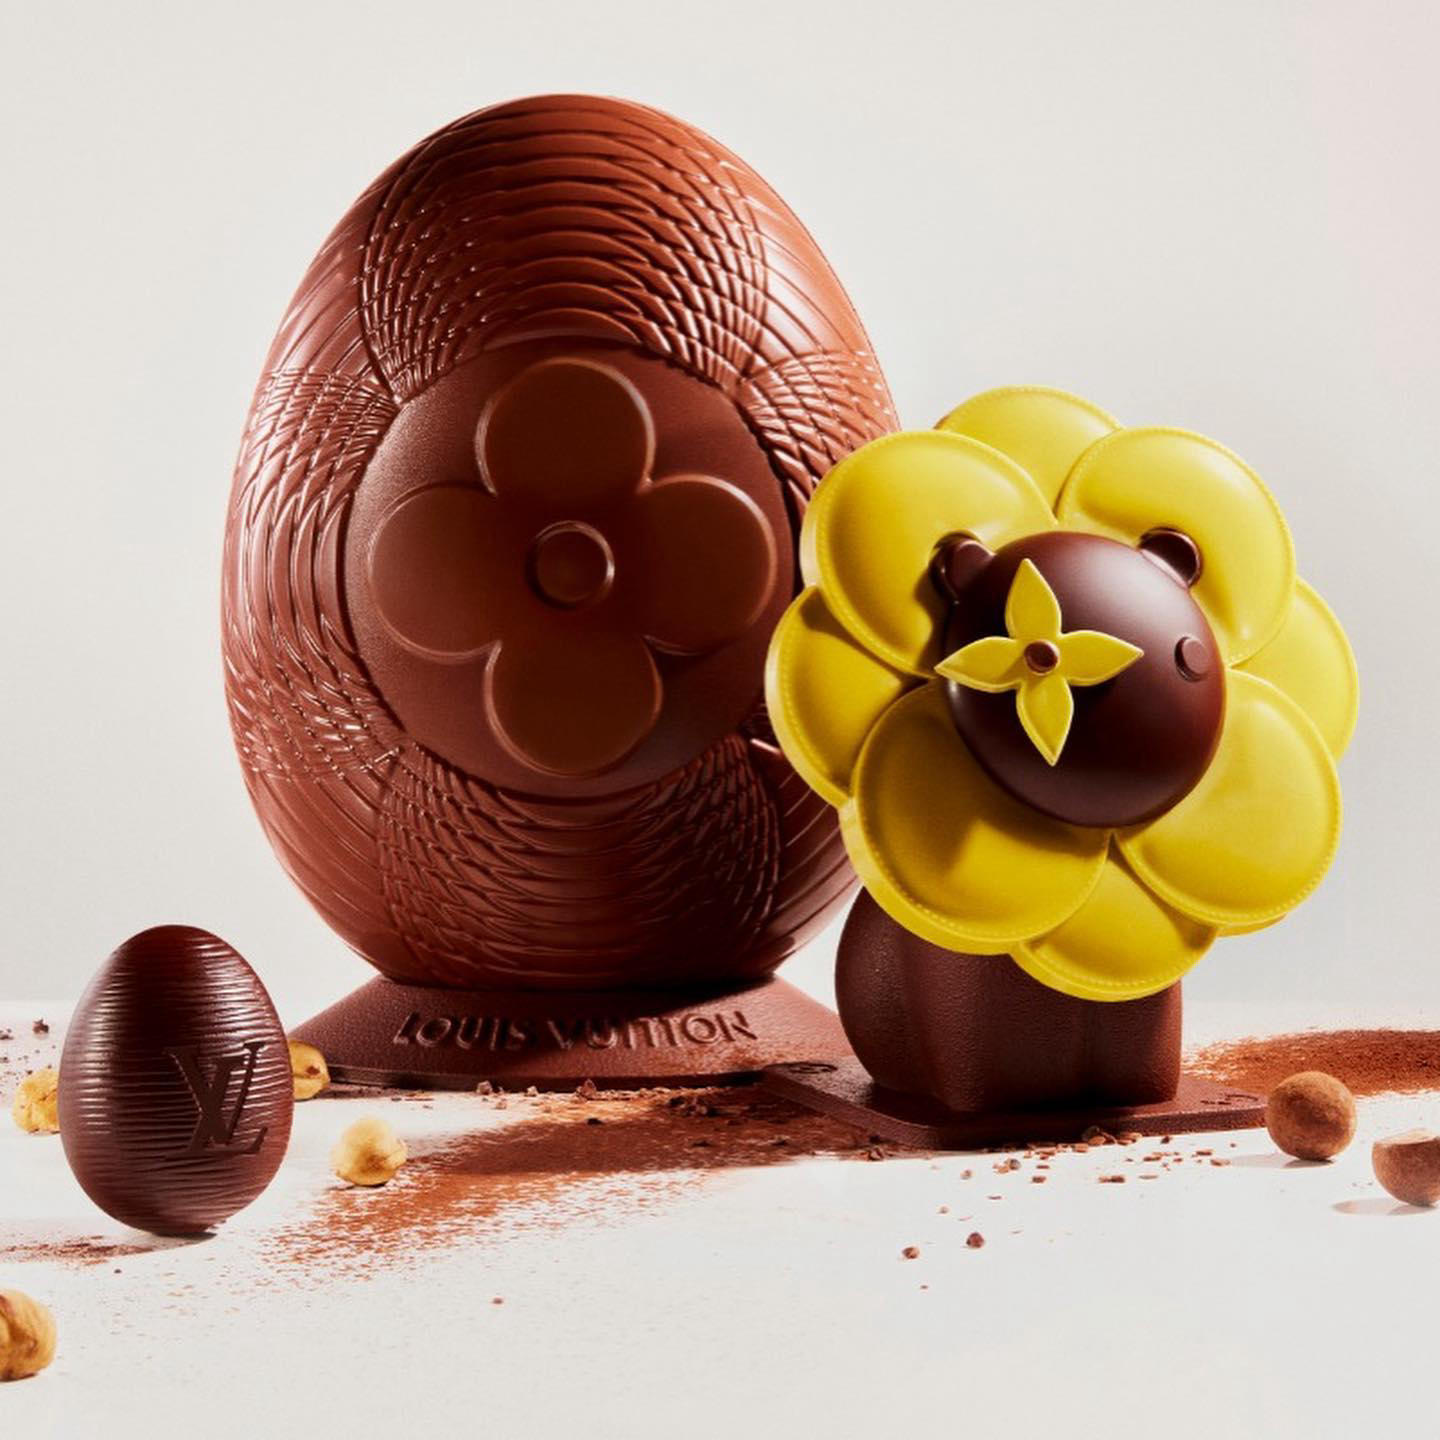 Notre collection de Pâques à découvrir dans notre chocolaterie #louisvuitton